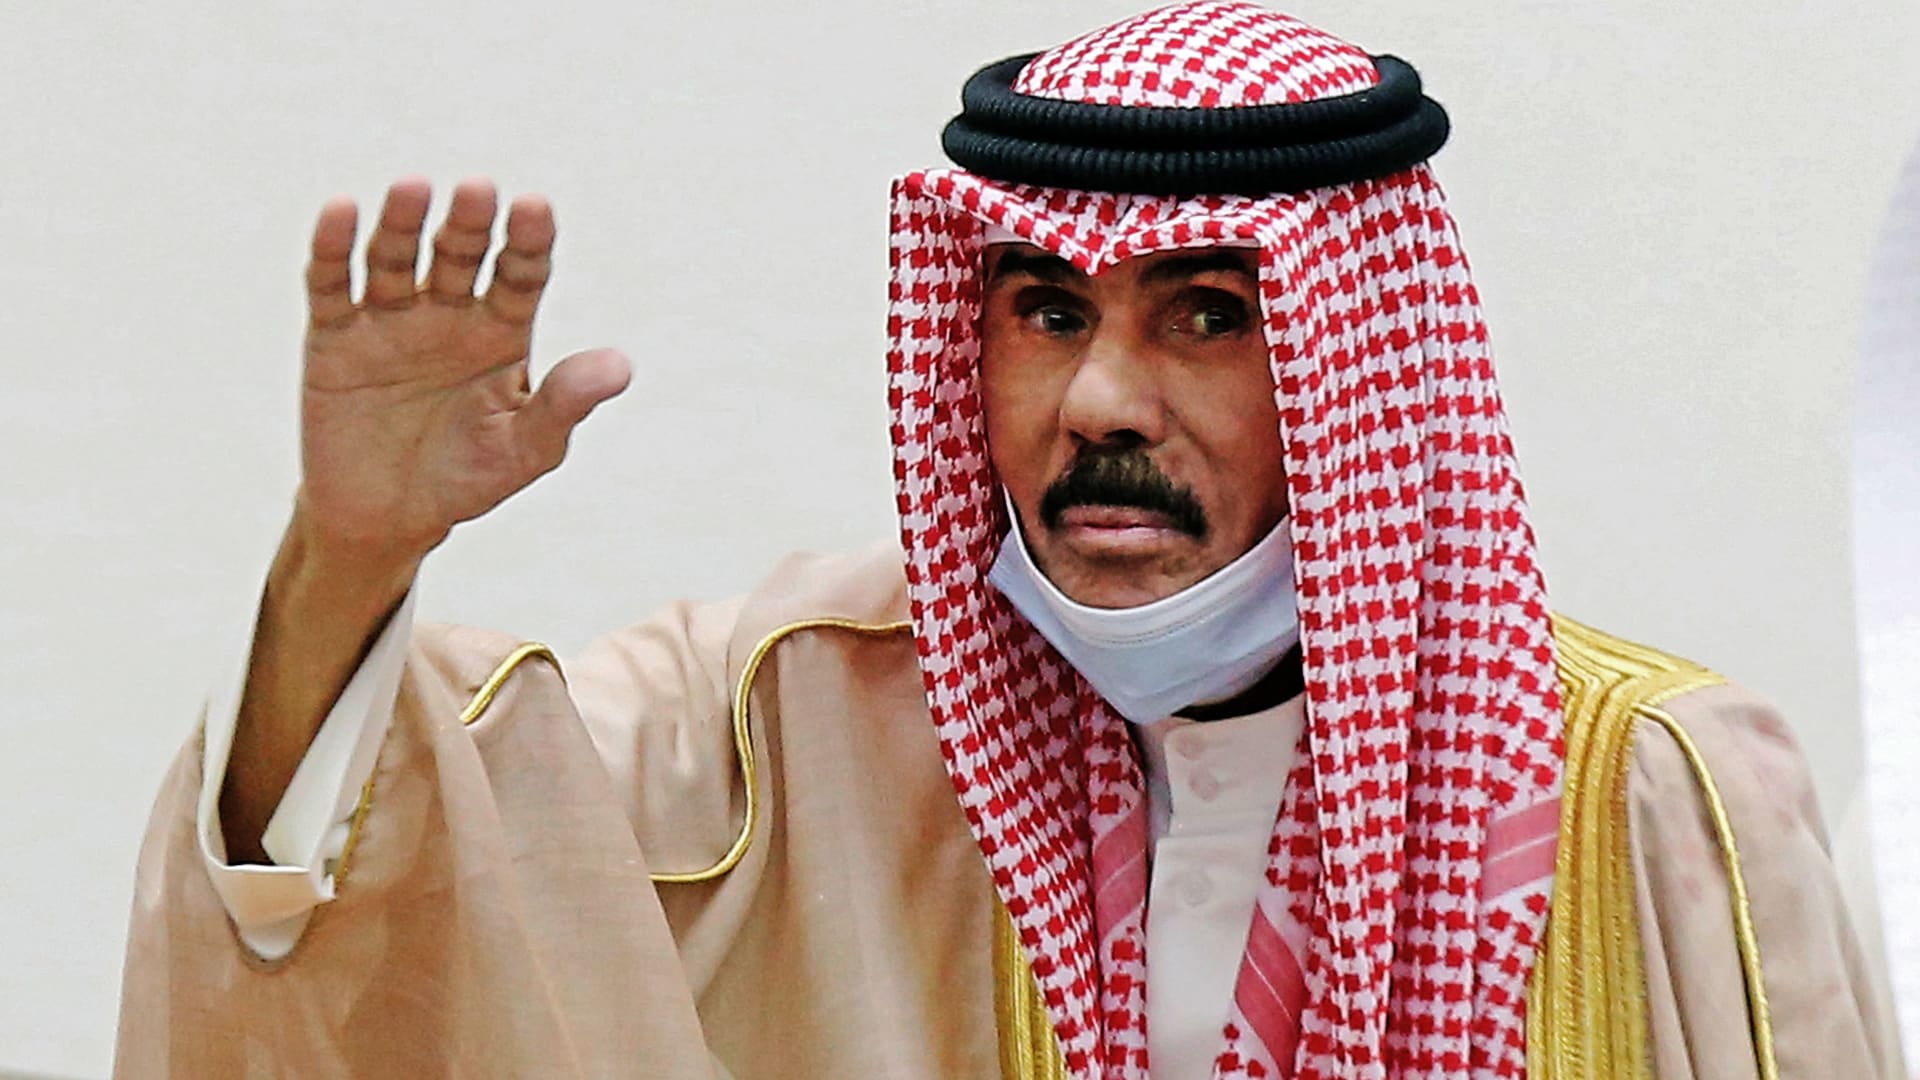 أمير الكويت في افتتاح القمة الخليجية: توقيع بيان العلا إنجاز تاريخي